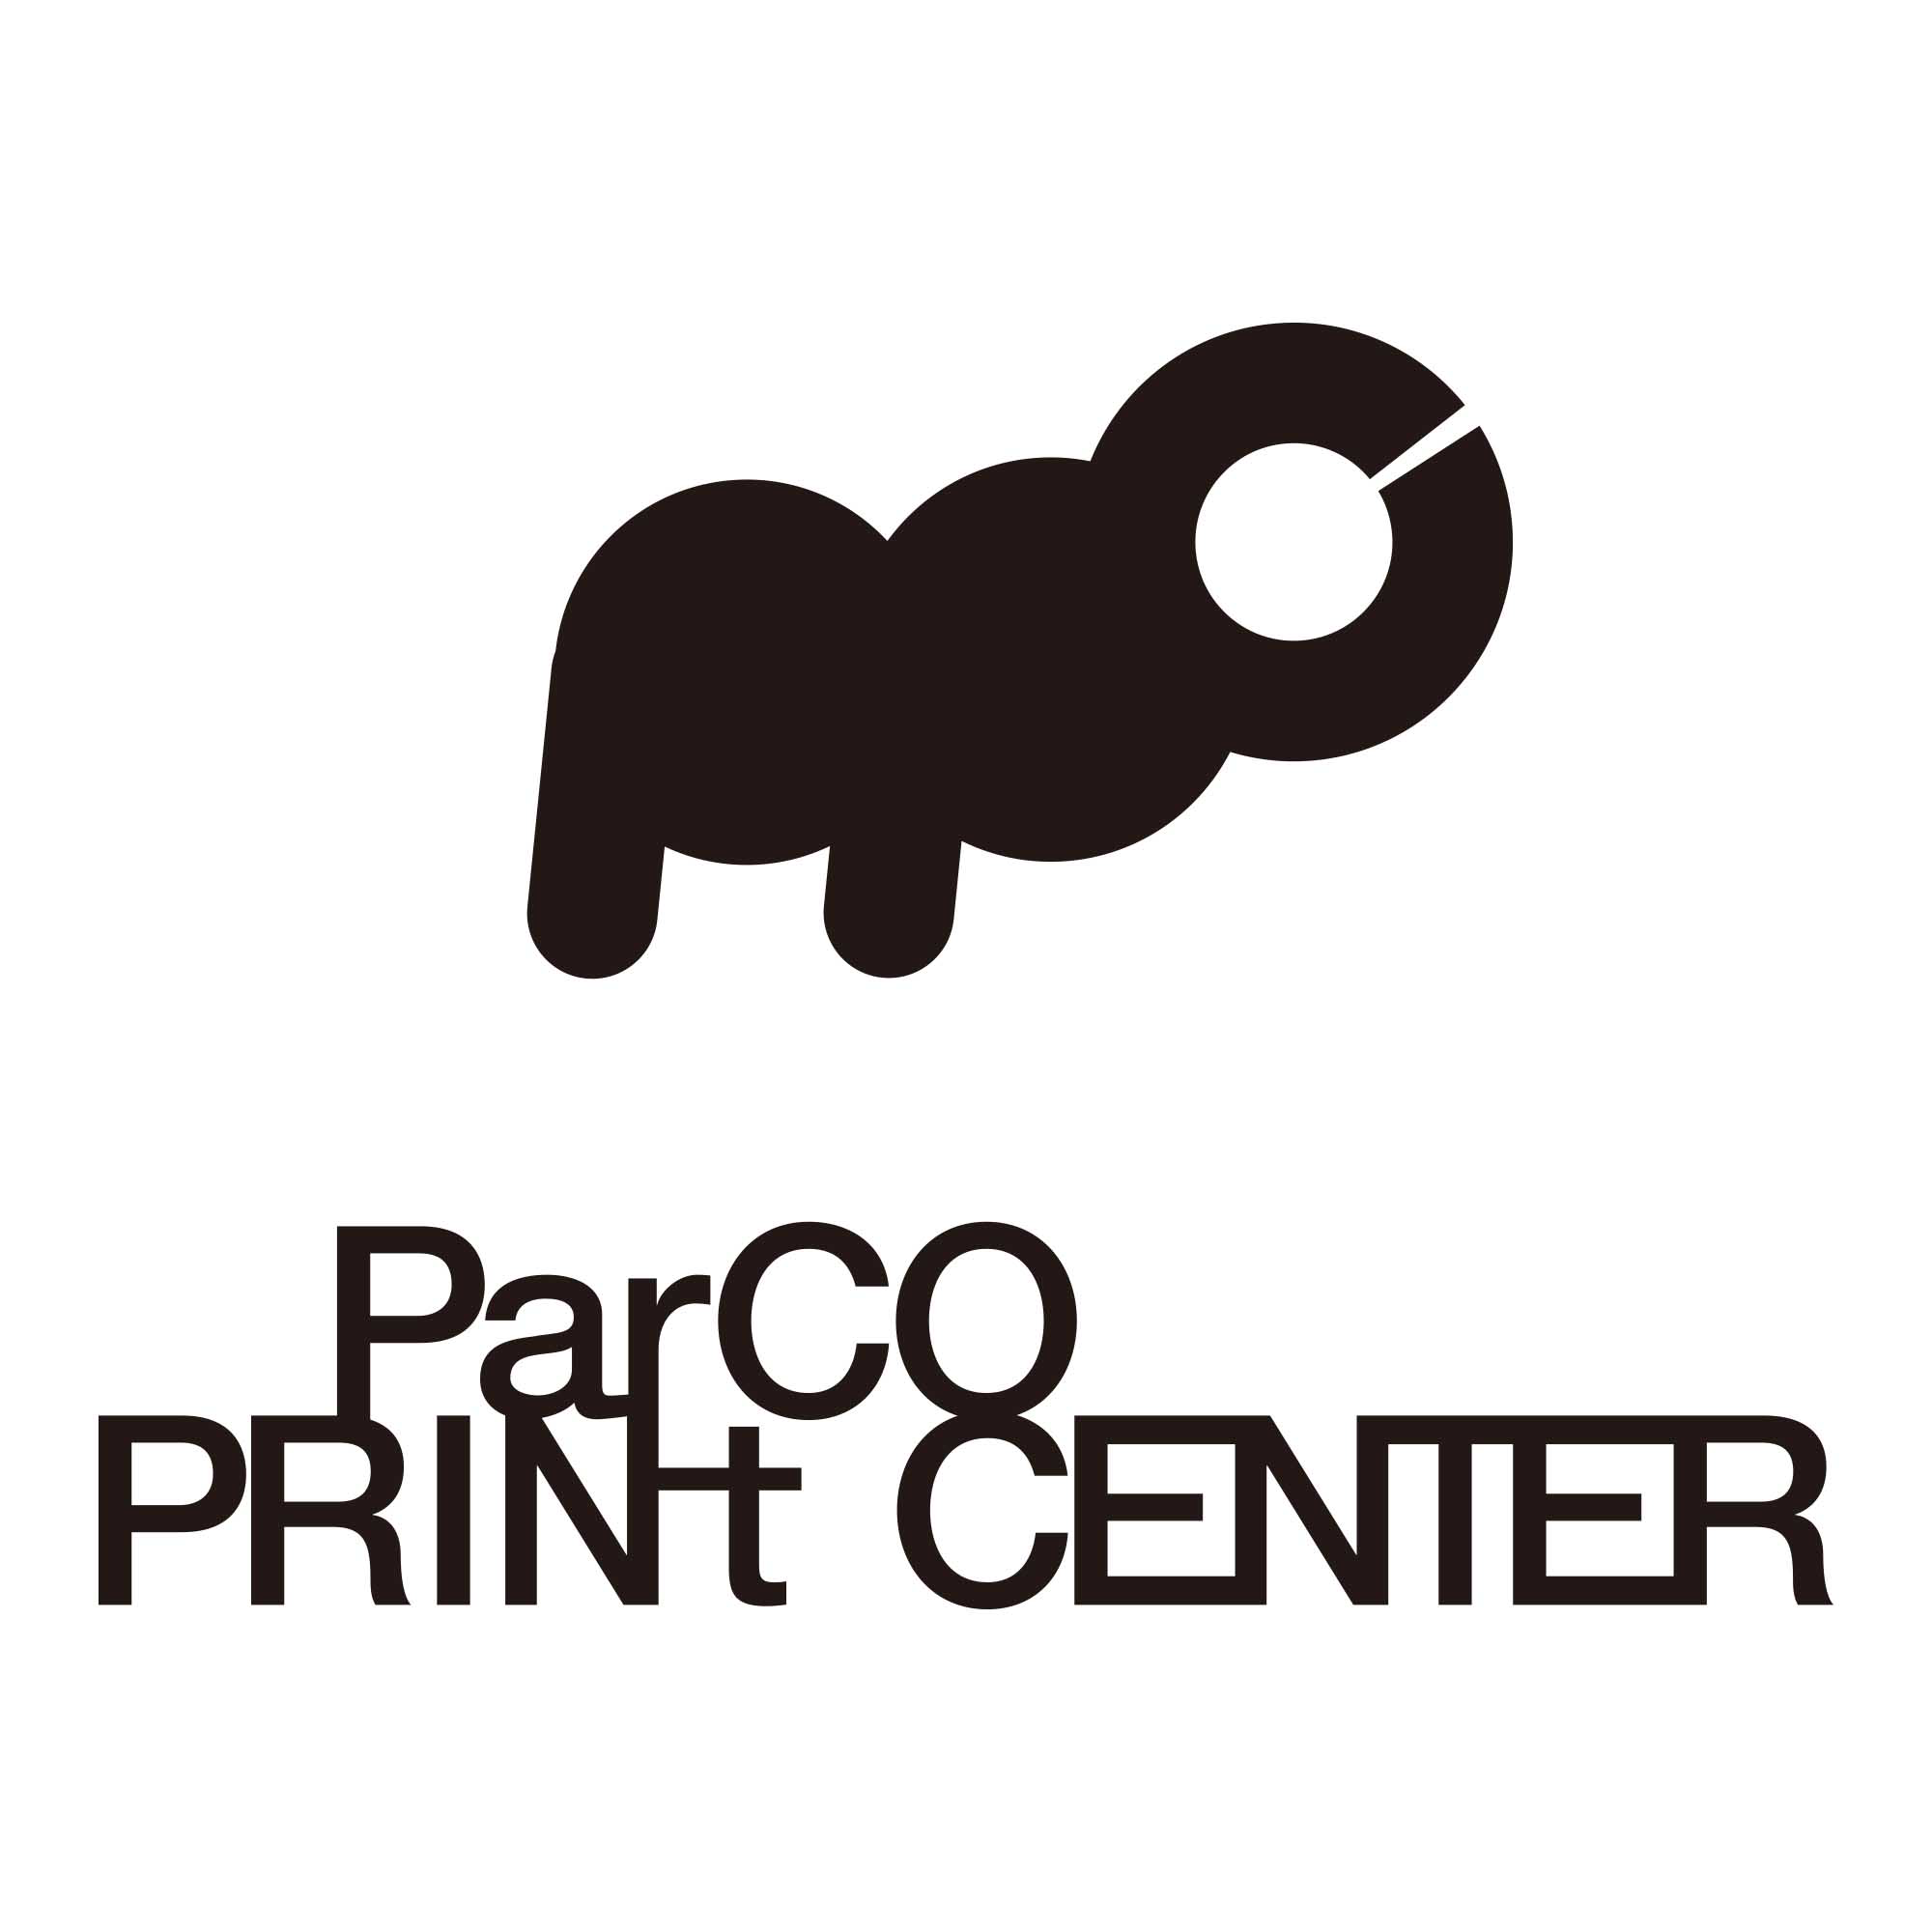 パルコが仕掛ける新しいアートイベント Parco Print Center 開催 世界で活躍するアーティストの作品をアートポスターにして限定販売 株式会社パルコのプレスリリース